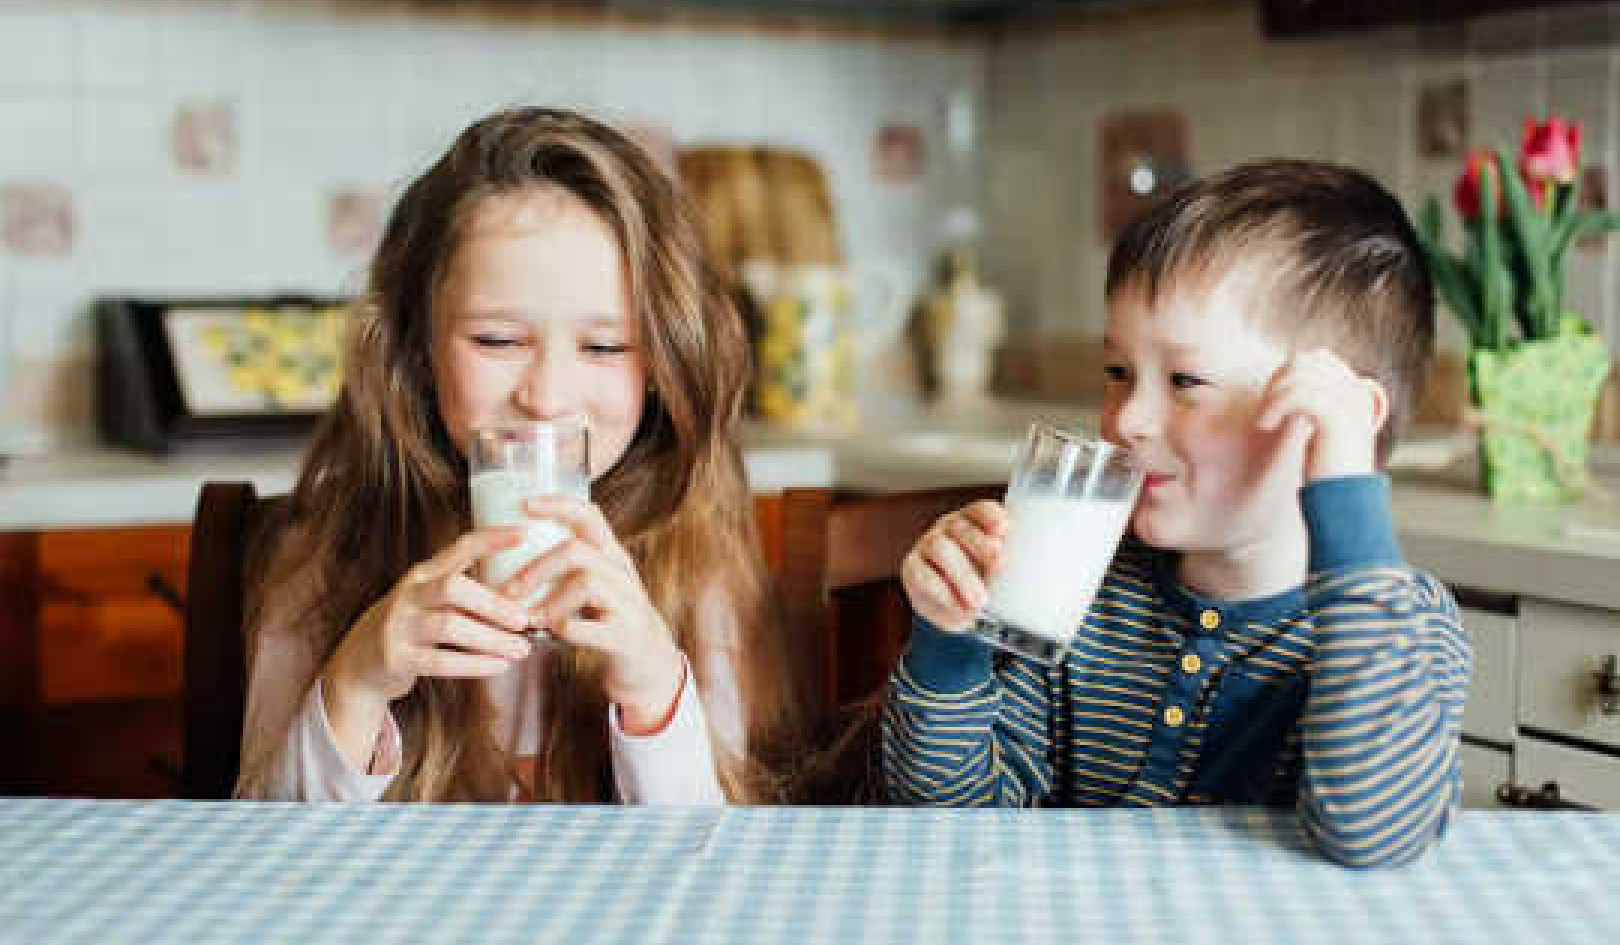 De ce ar trebui să păstrați laptele mai mult decât credeți